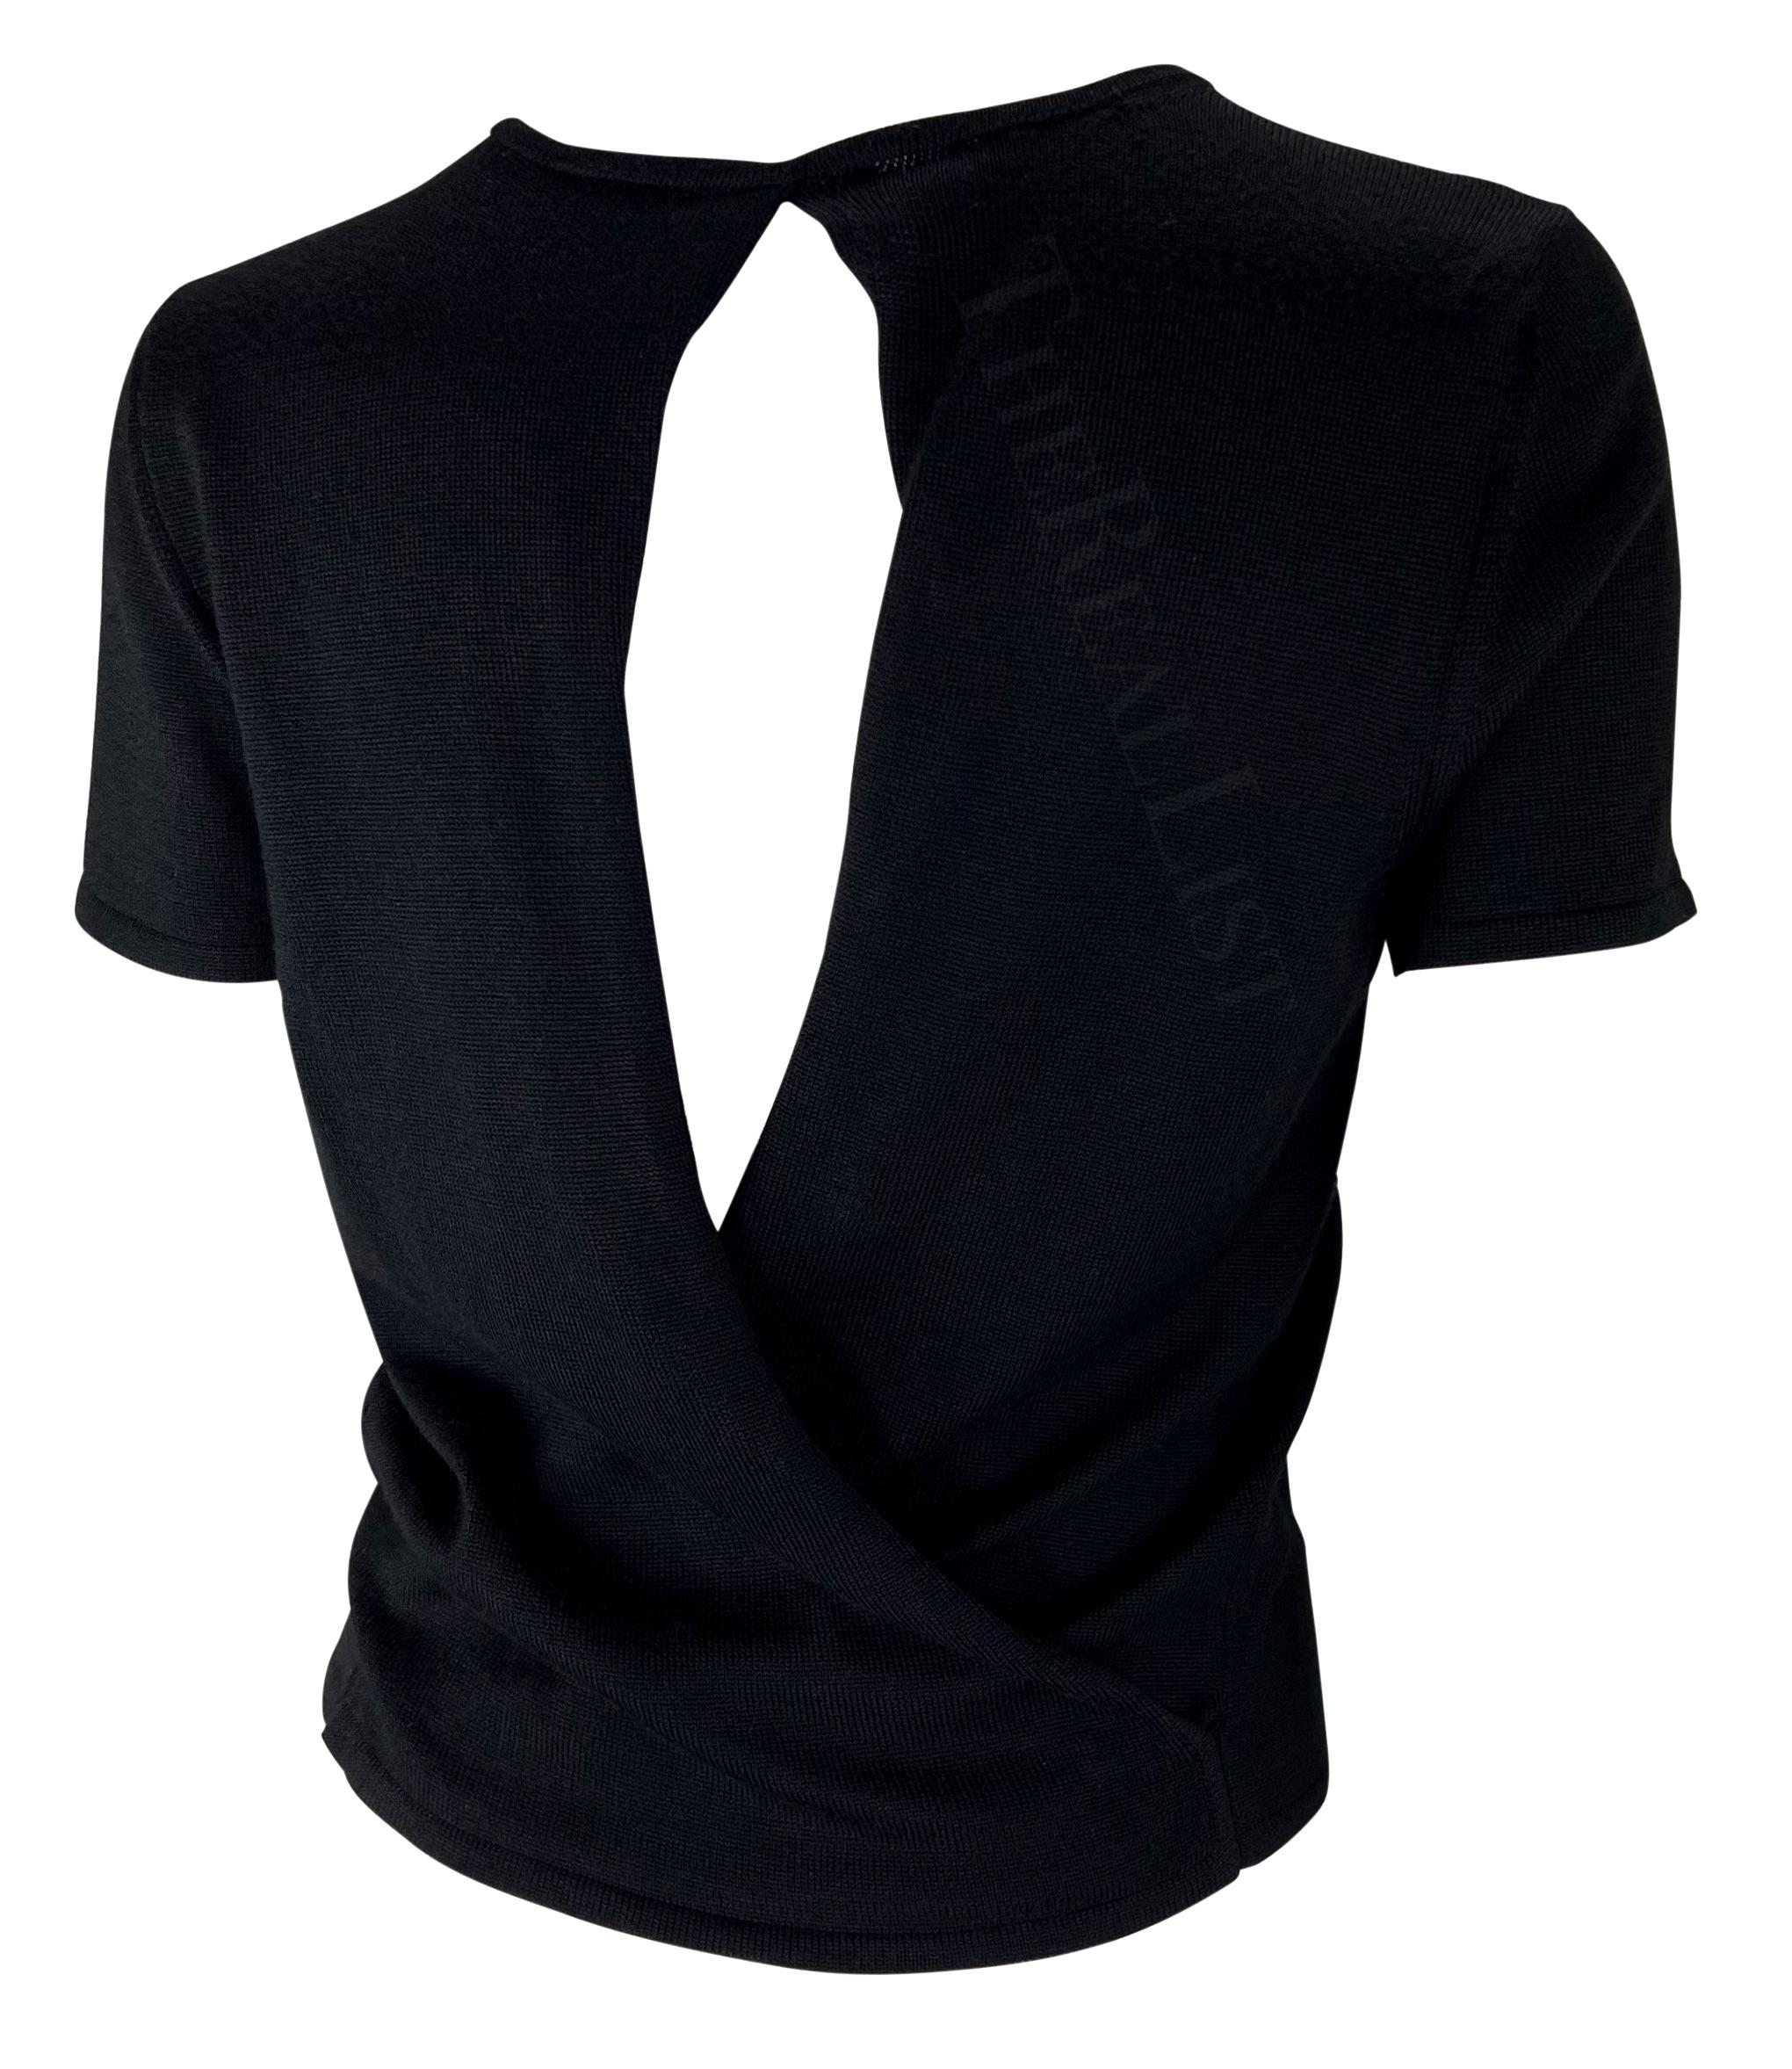 Présentation d'un t-shirt Gucci en maille noire, dessiné par Tom Ford. Issu de la collection printemps-été 1997, ce haut présente des détails perforés et s'enroule dans le dos en créant un œillet qui dévoile le dos. Ce top Gucci by Tom Ford est